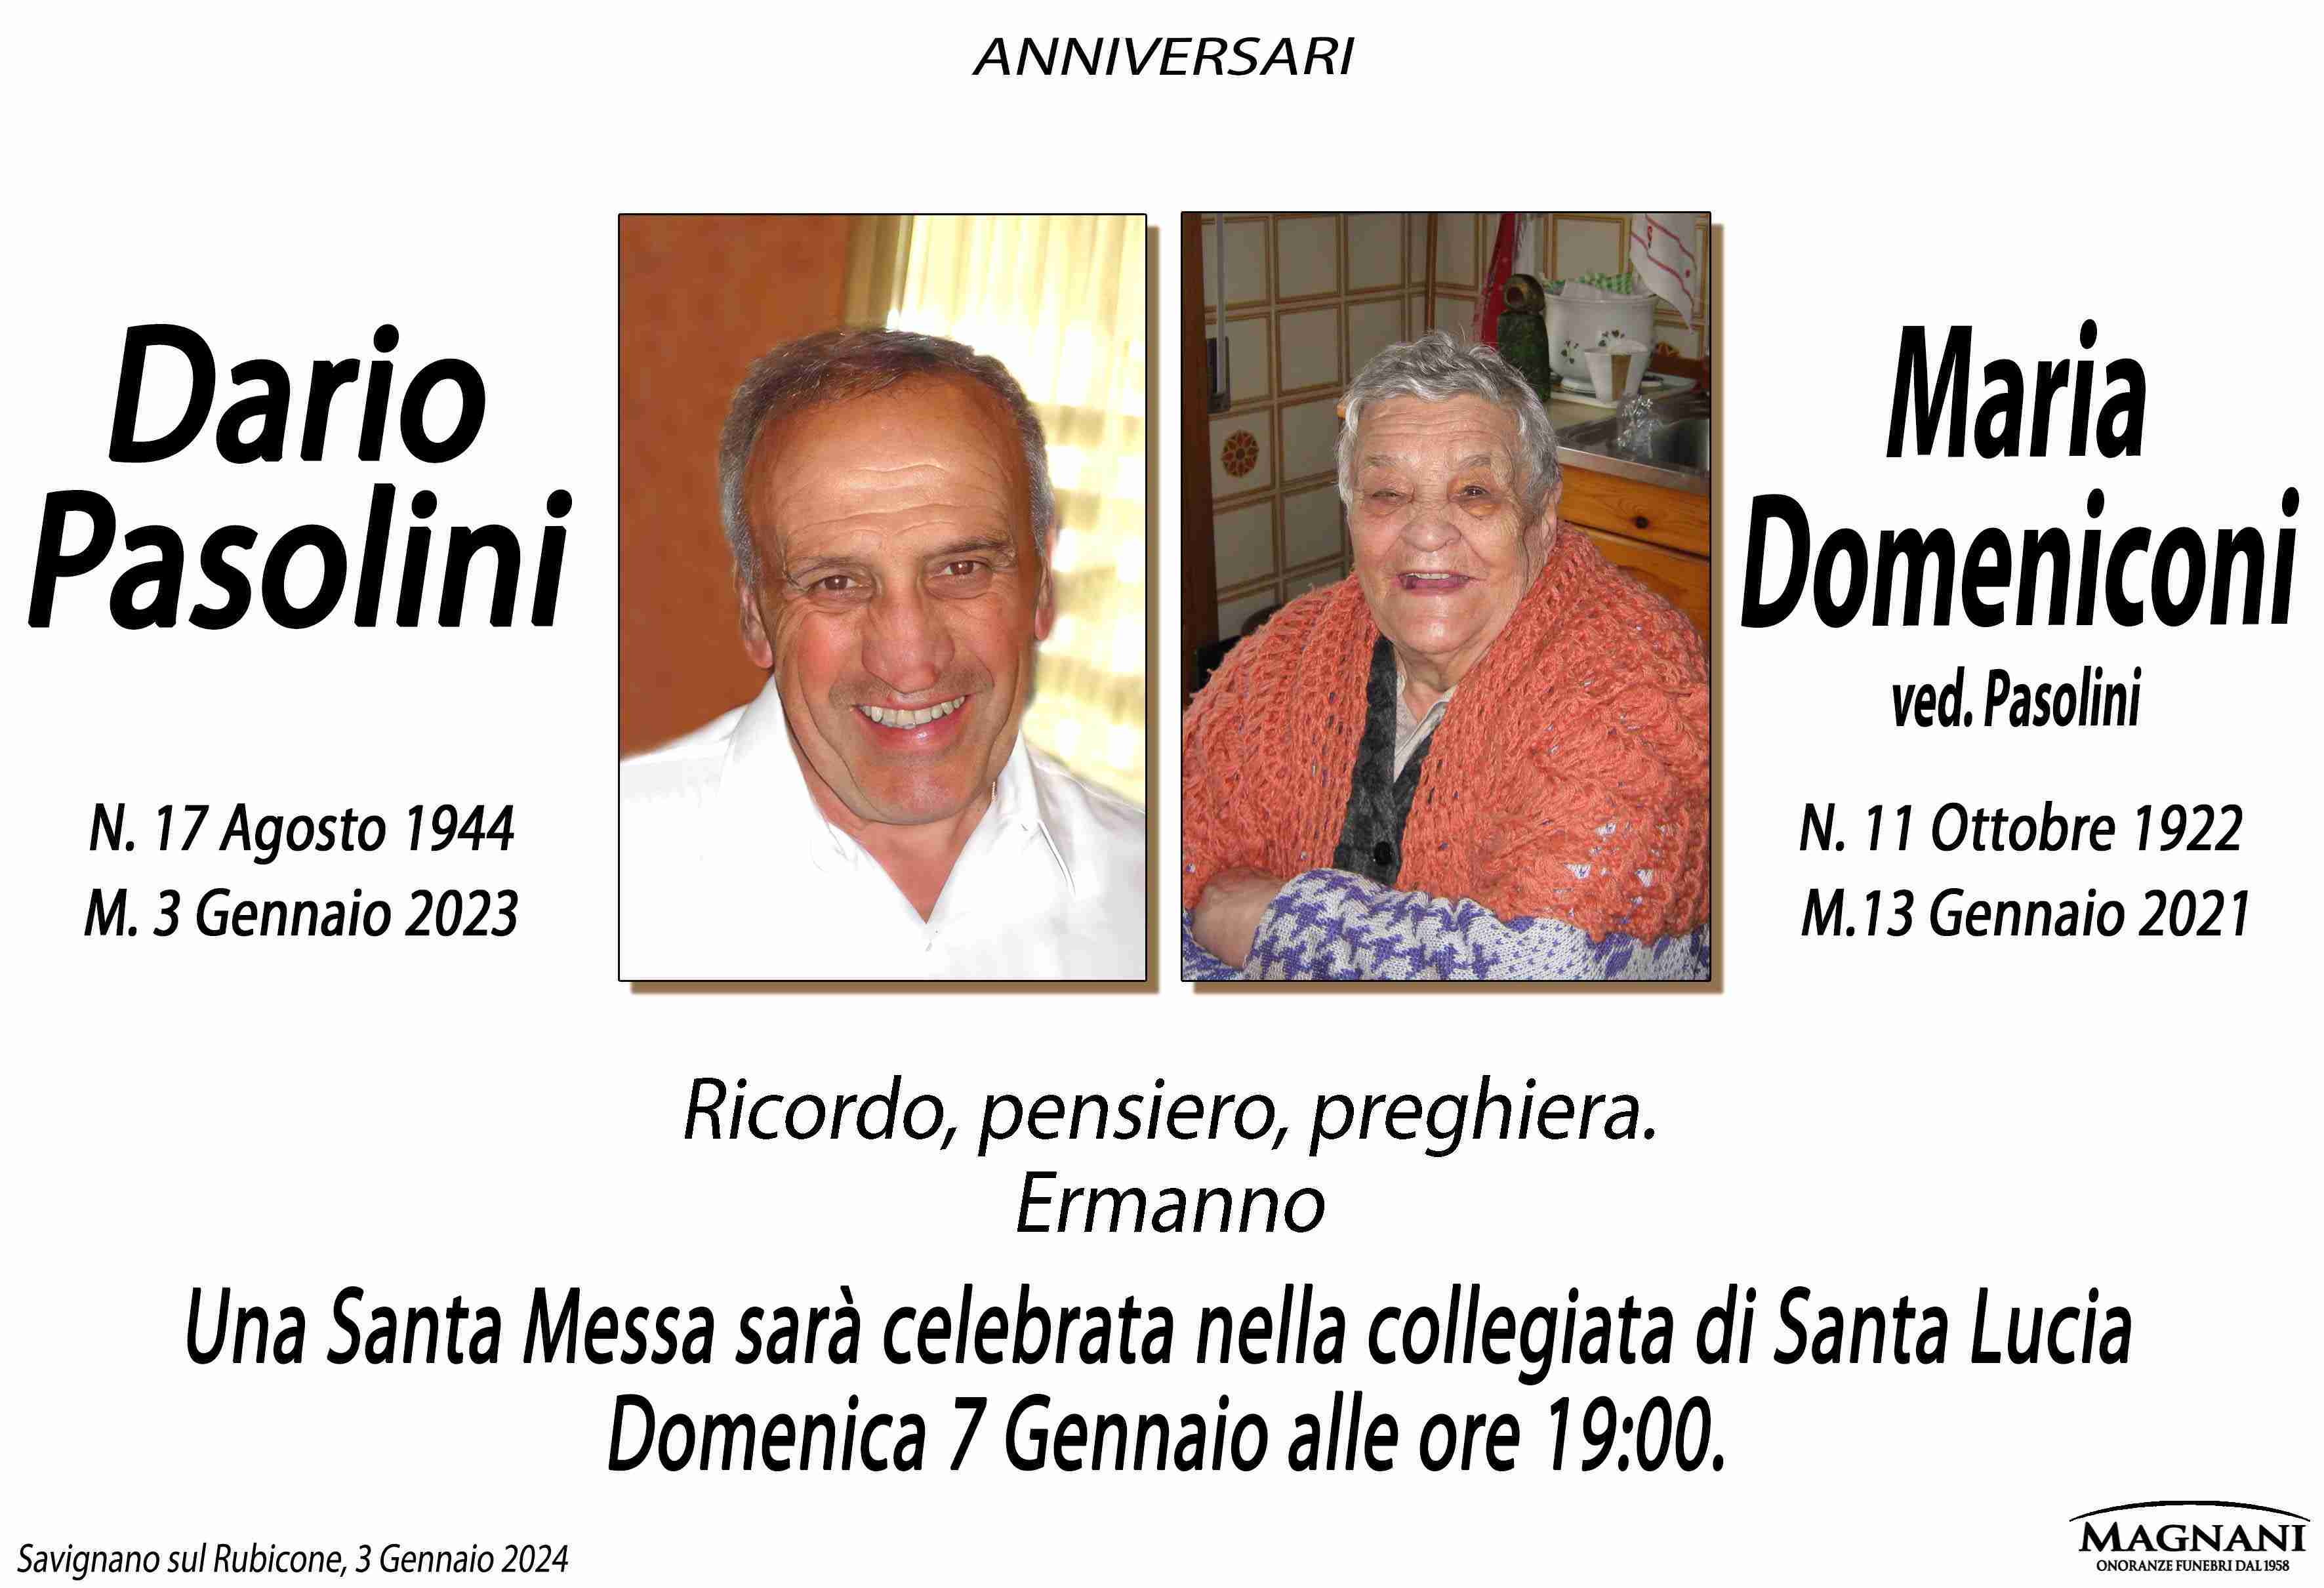 Dario Pasolini e Maria Domeniconi